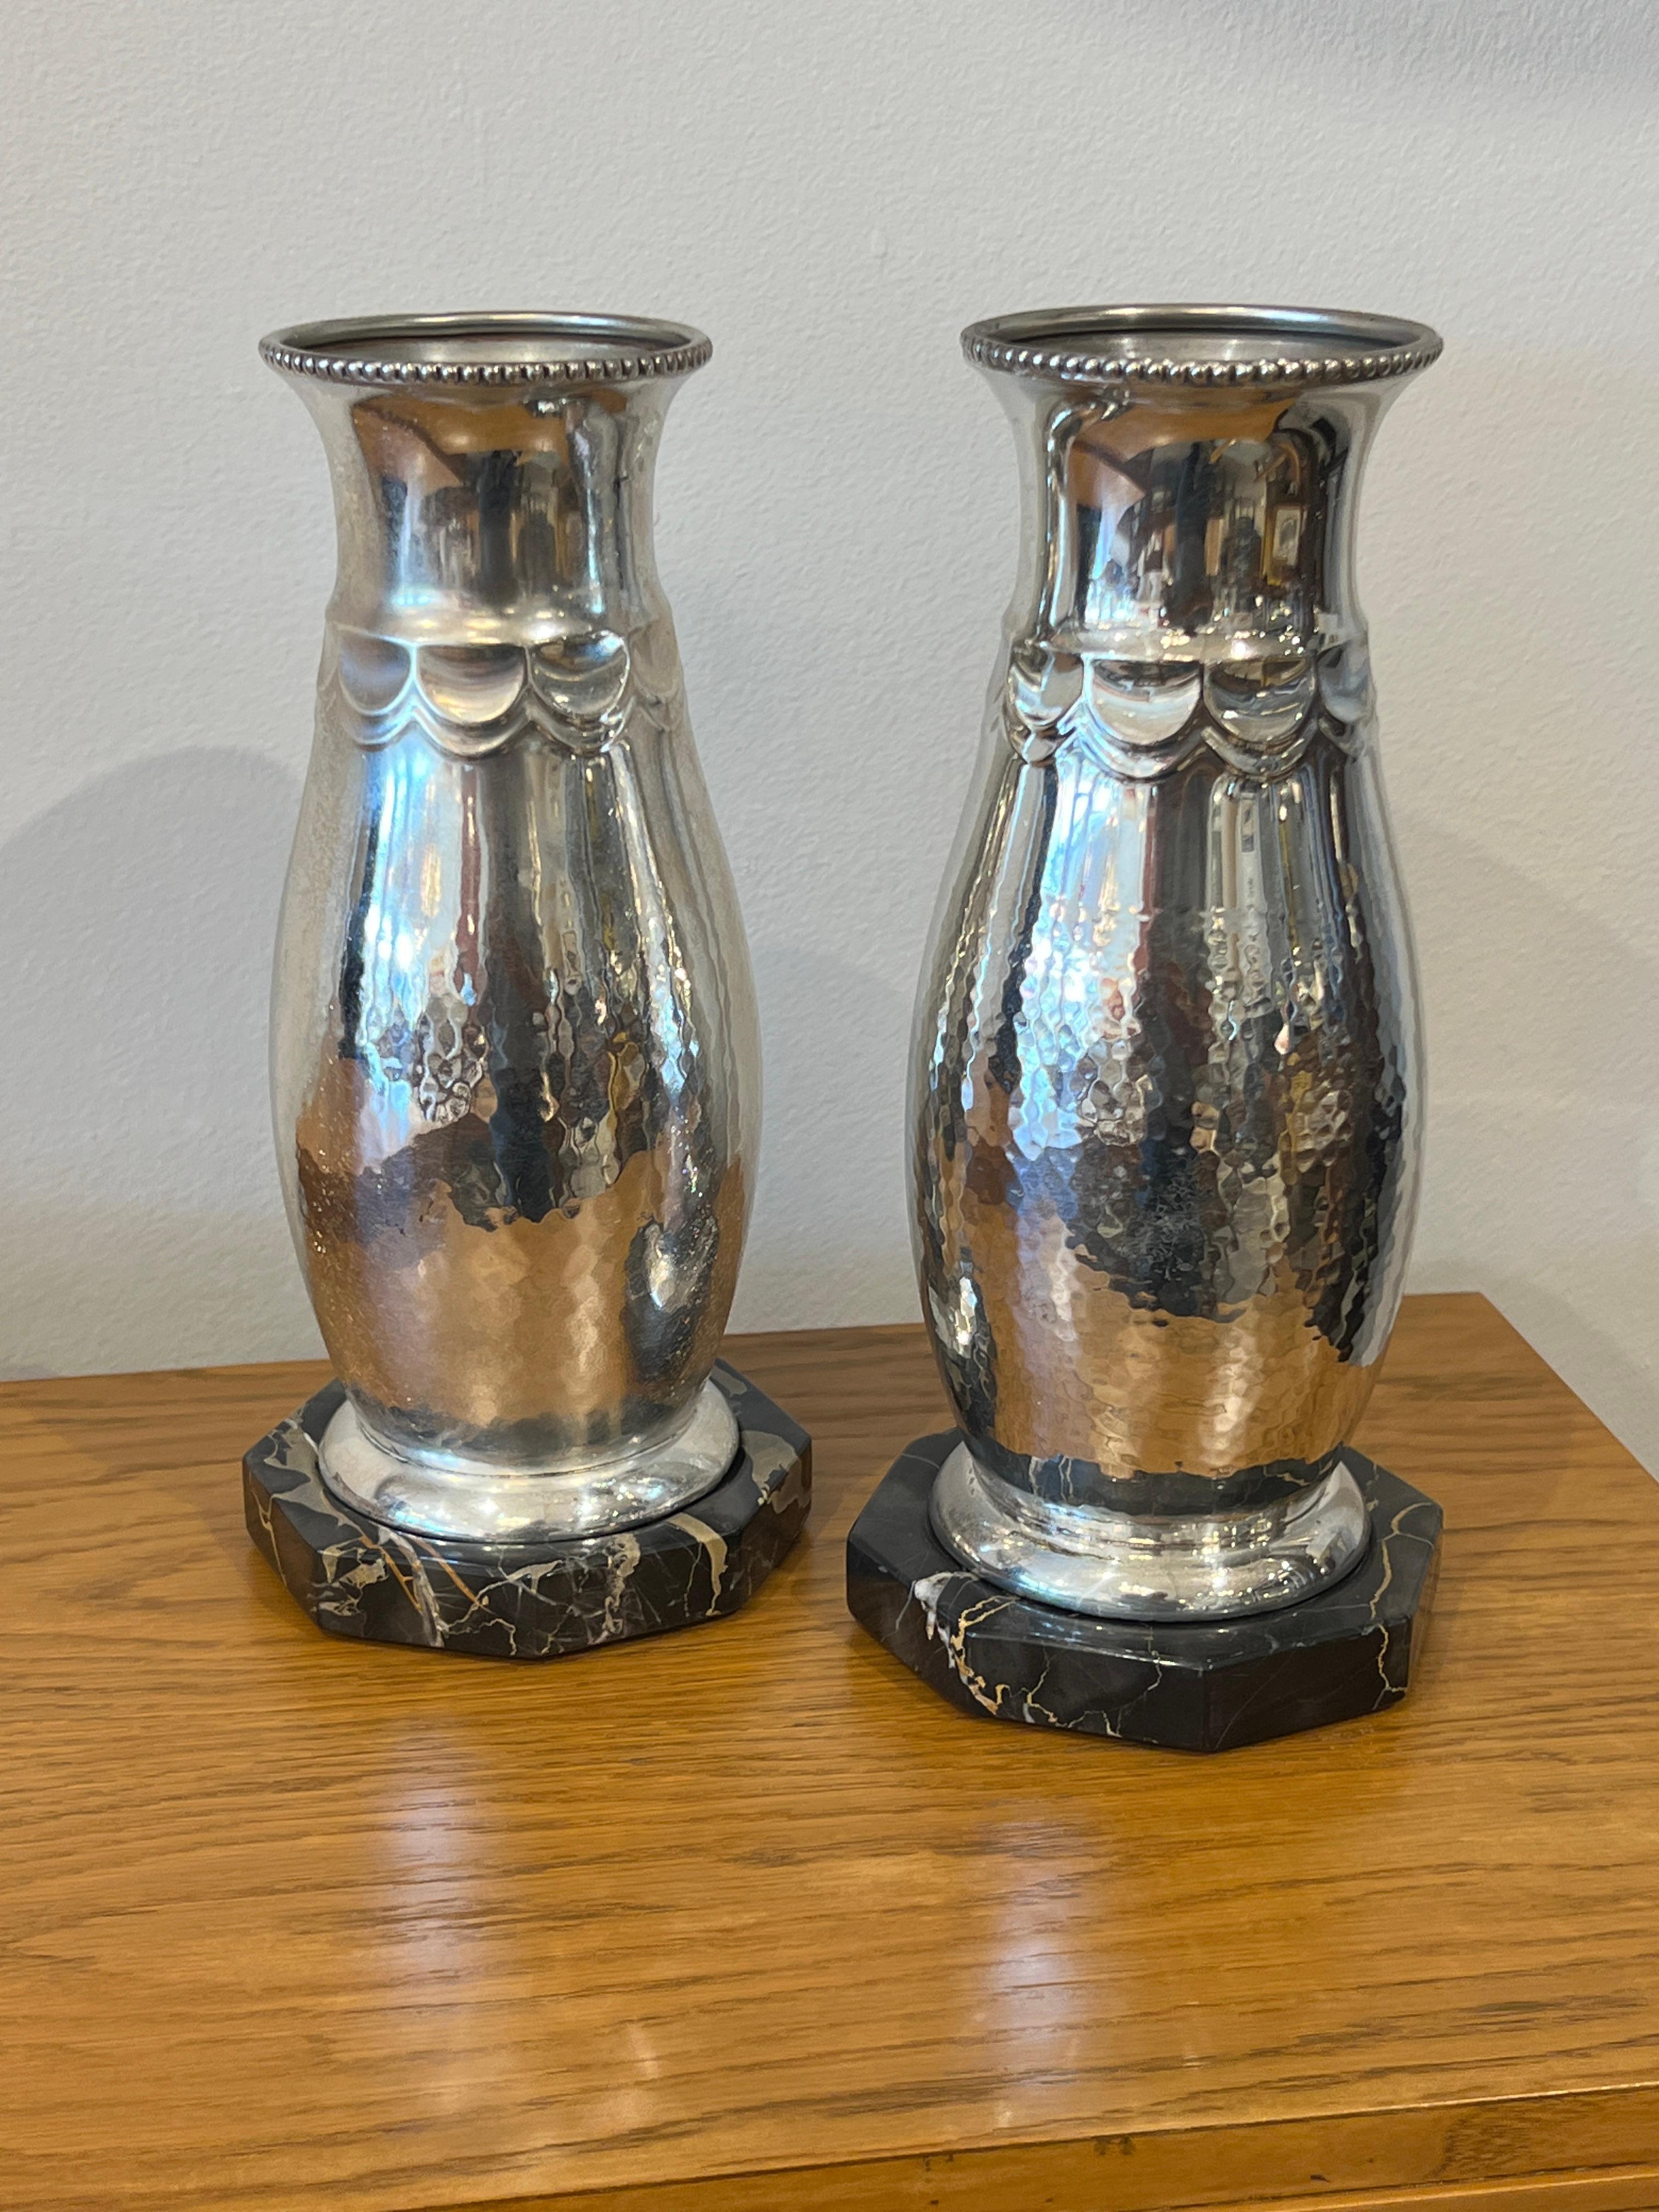 Ein Paar schöne versilberte Art Deco Vasen mit portoro Marmorsockel.
Hergestellt in Gernany
Hergestellt in CIRCA: 1930